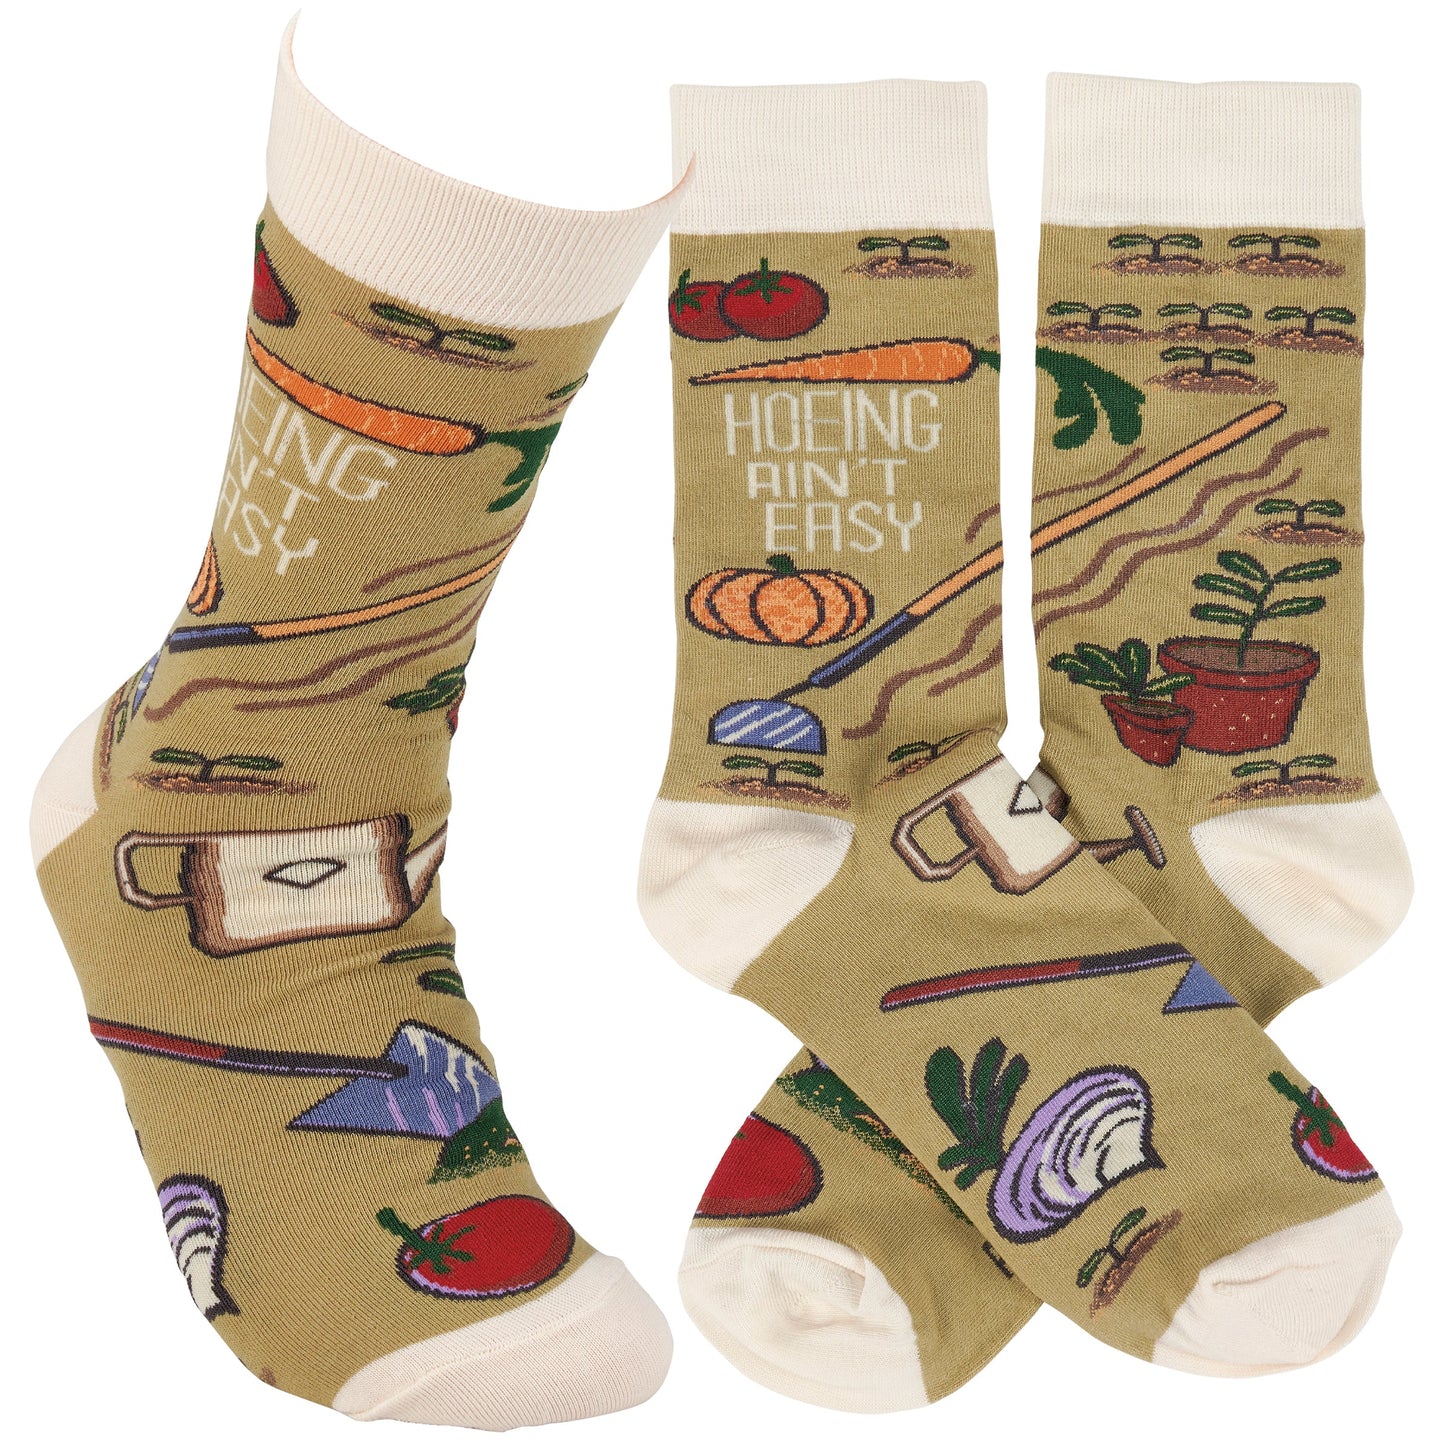 Hoeing Ain't Easy Women's Socks | Farm Themed Everyday Footwear